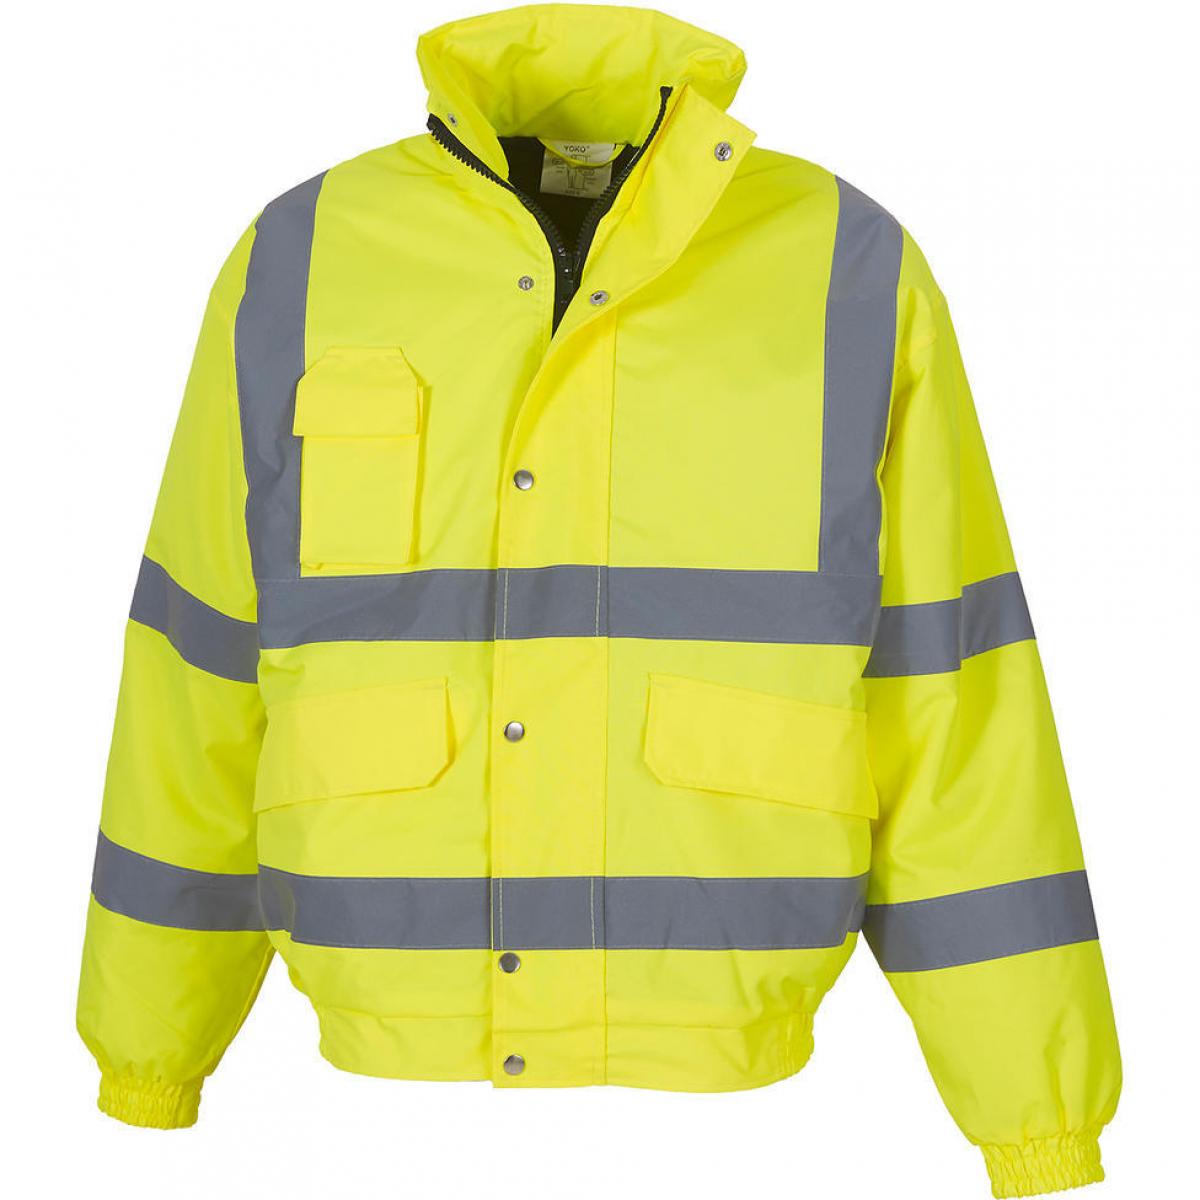 Hersteller: YOKO Herstellernummer: HVP211 Artikelbezeichnung: HiVis Fluo Bomber Jacke - Sicherheitsjacke Farbe: Fluo Yellow